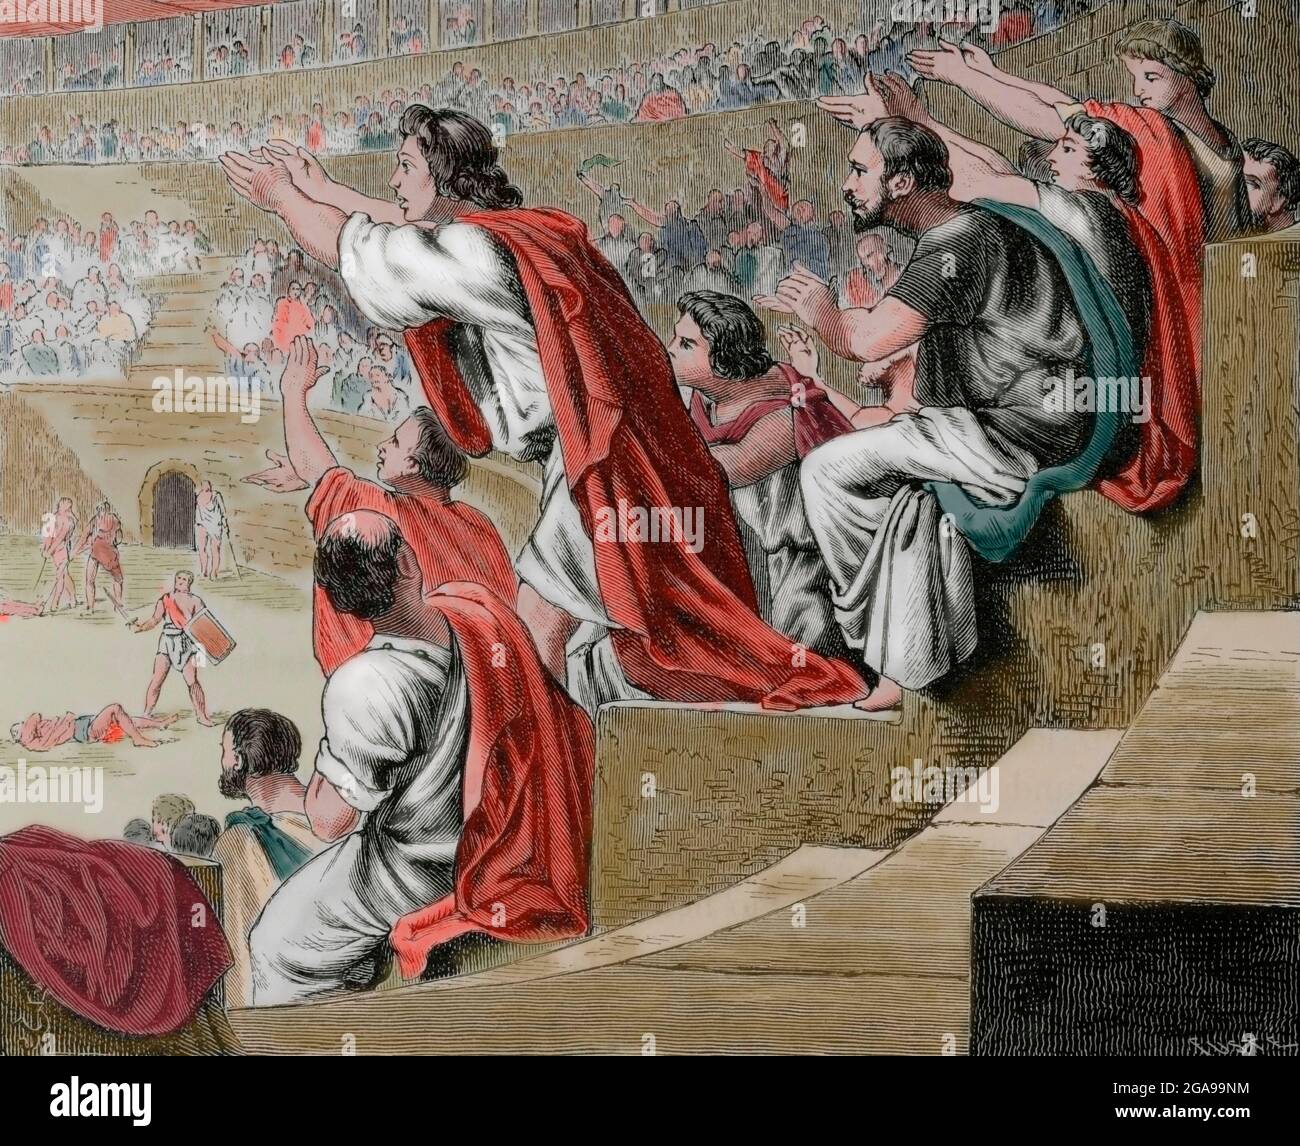 Römisches Reich. Zuschauer bei einem Gladiatorenkampf. Gravur. Spätere Färbung. La Civilizacion (die Zivilisation), Band II, 1881. Stockfoto